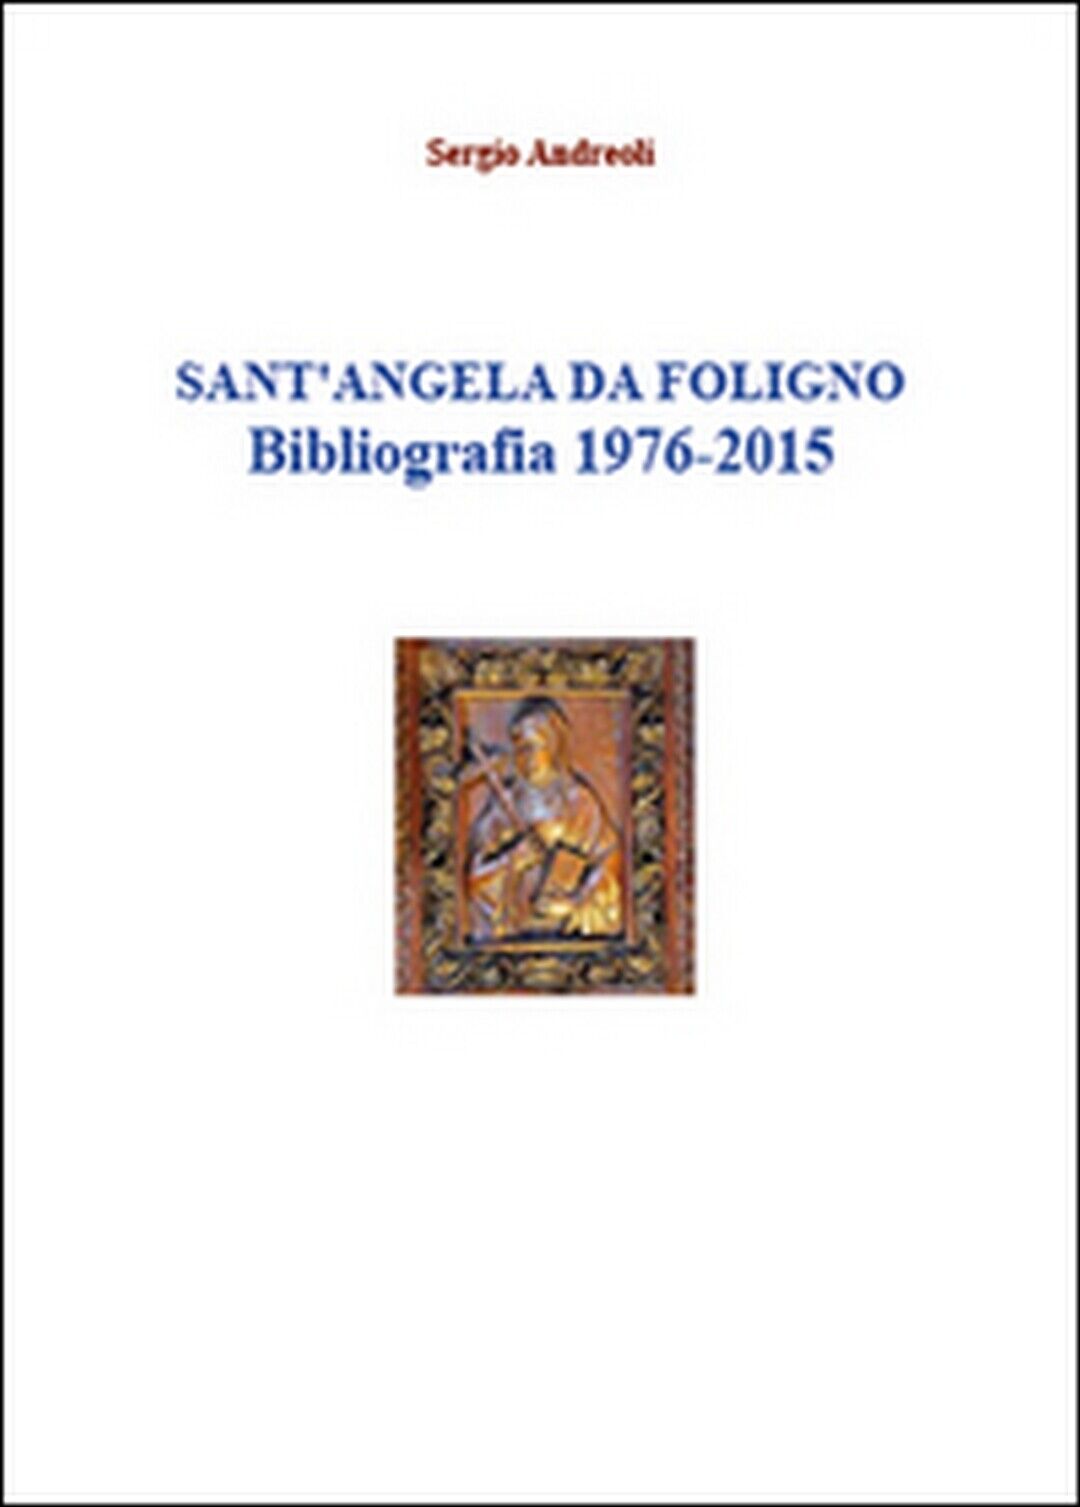 Sant?Angela da Foligno. Bibliografia 1976-2015  di Sergio Andreoli,  2015